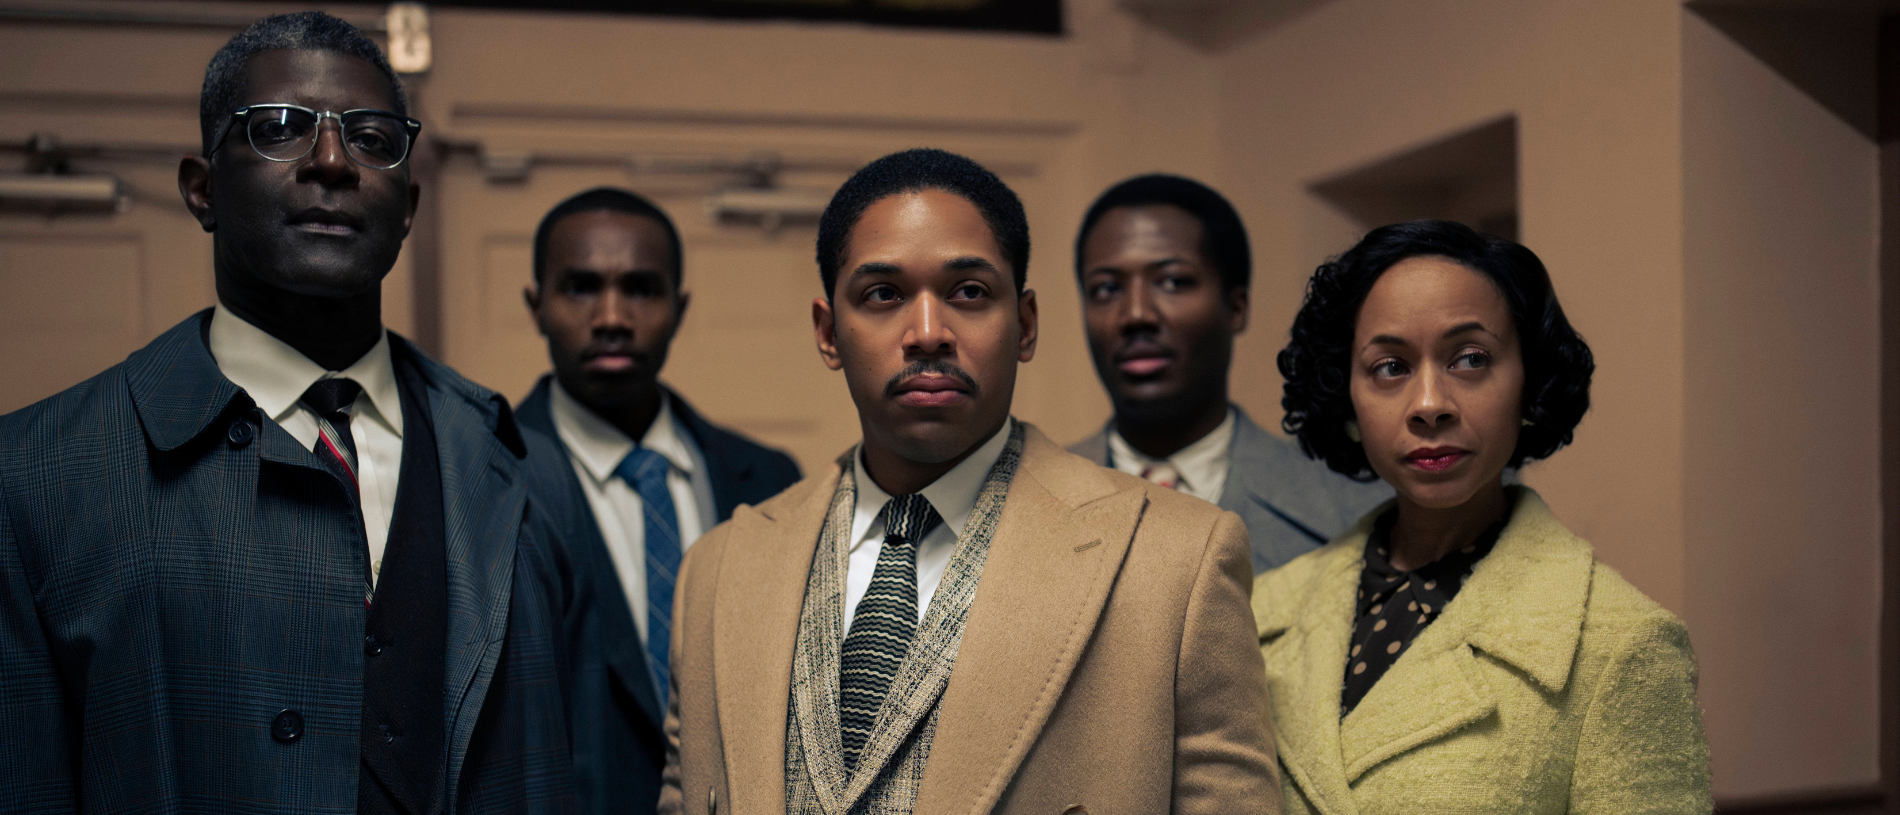 You are currently viewing Martin Luther King e Malcom X rumam ao National Geographic na 4ª temporada de “Genius”